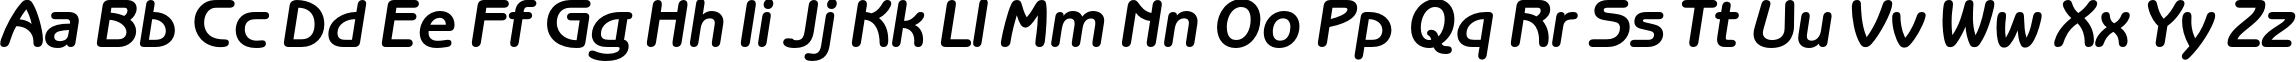 Пример написания английского алфавита шрифтом BenguiatGothicC Bold Italic